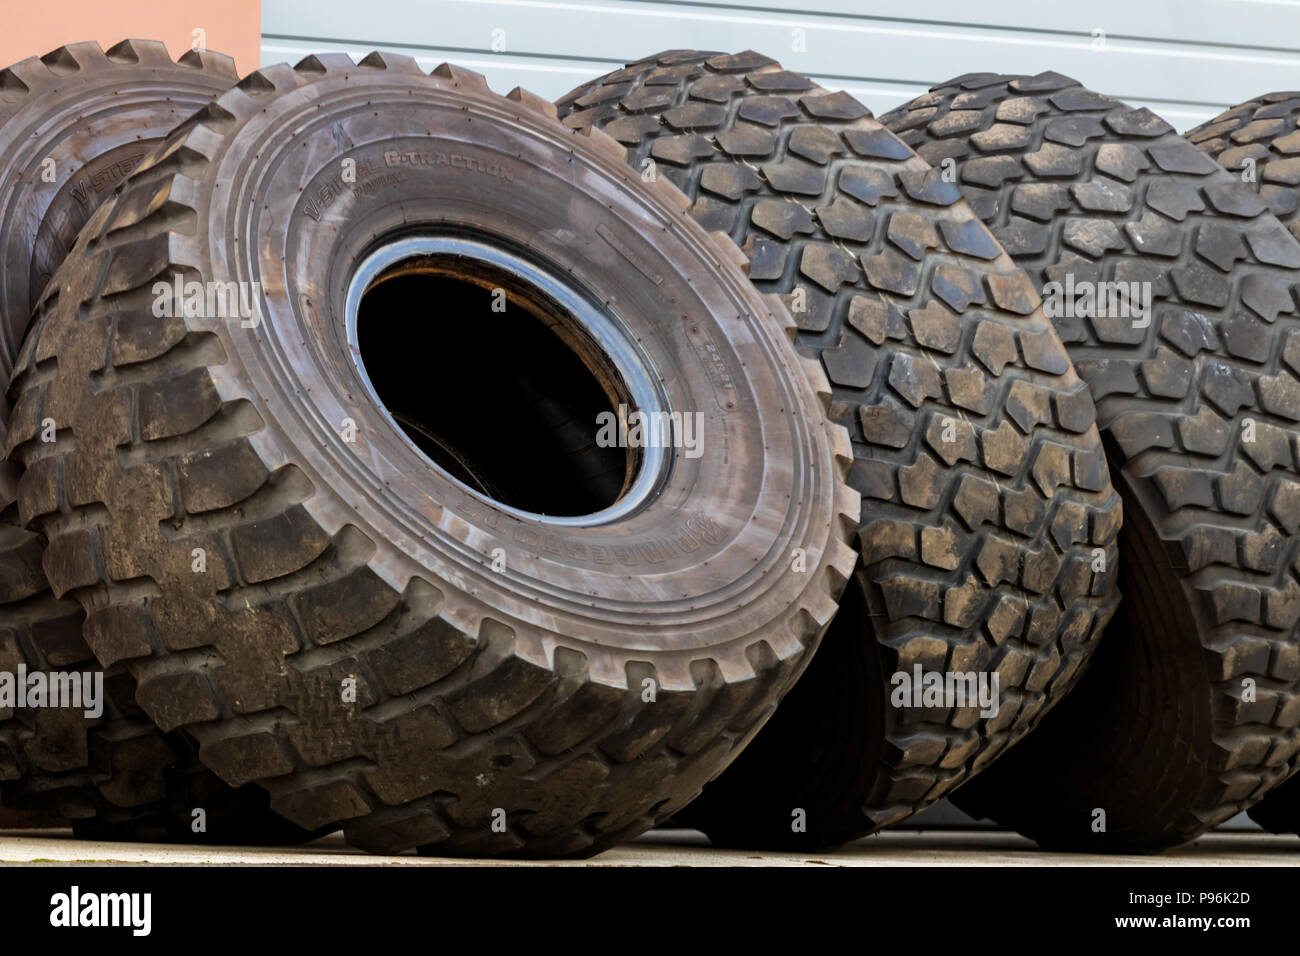 Alte gebrauchte Lkw Reifen am seitlichen Umfallen am Rad gestapelt  Stockfotografie - Alamy